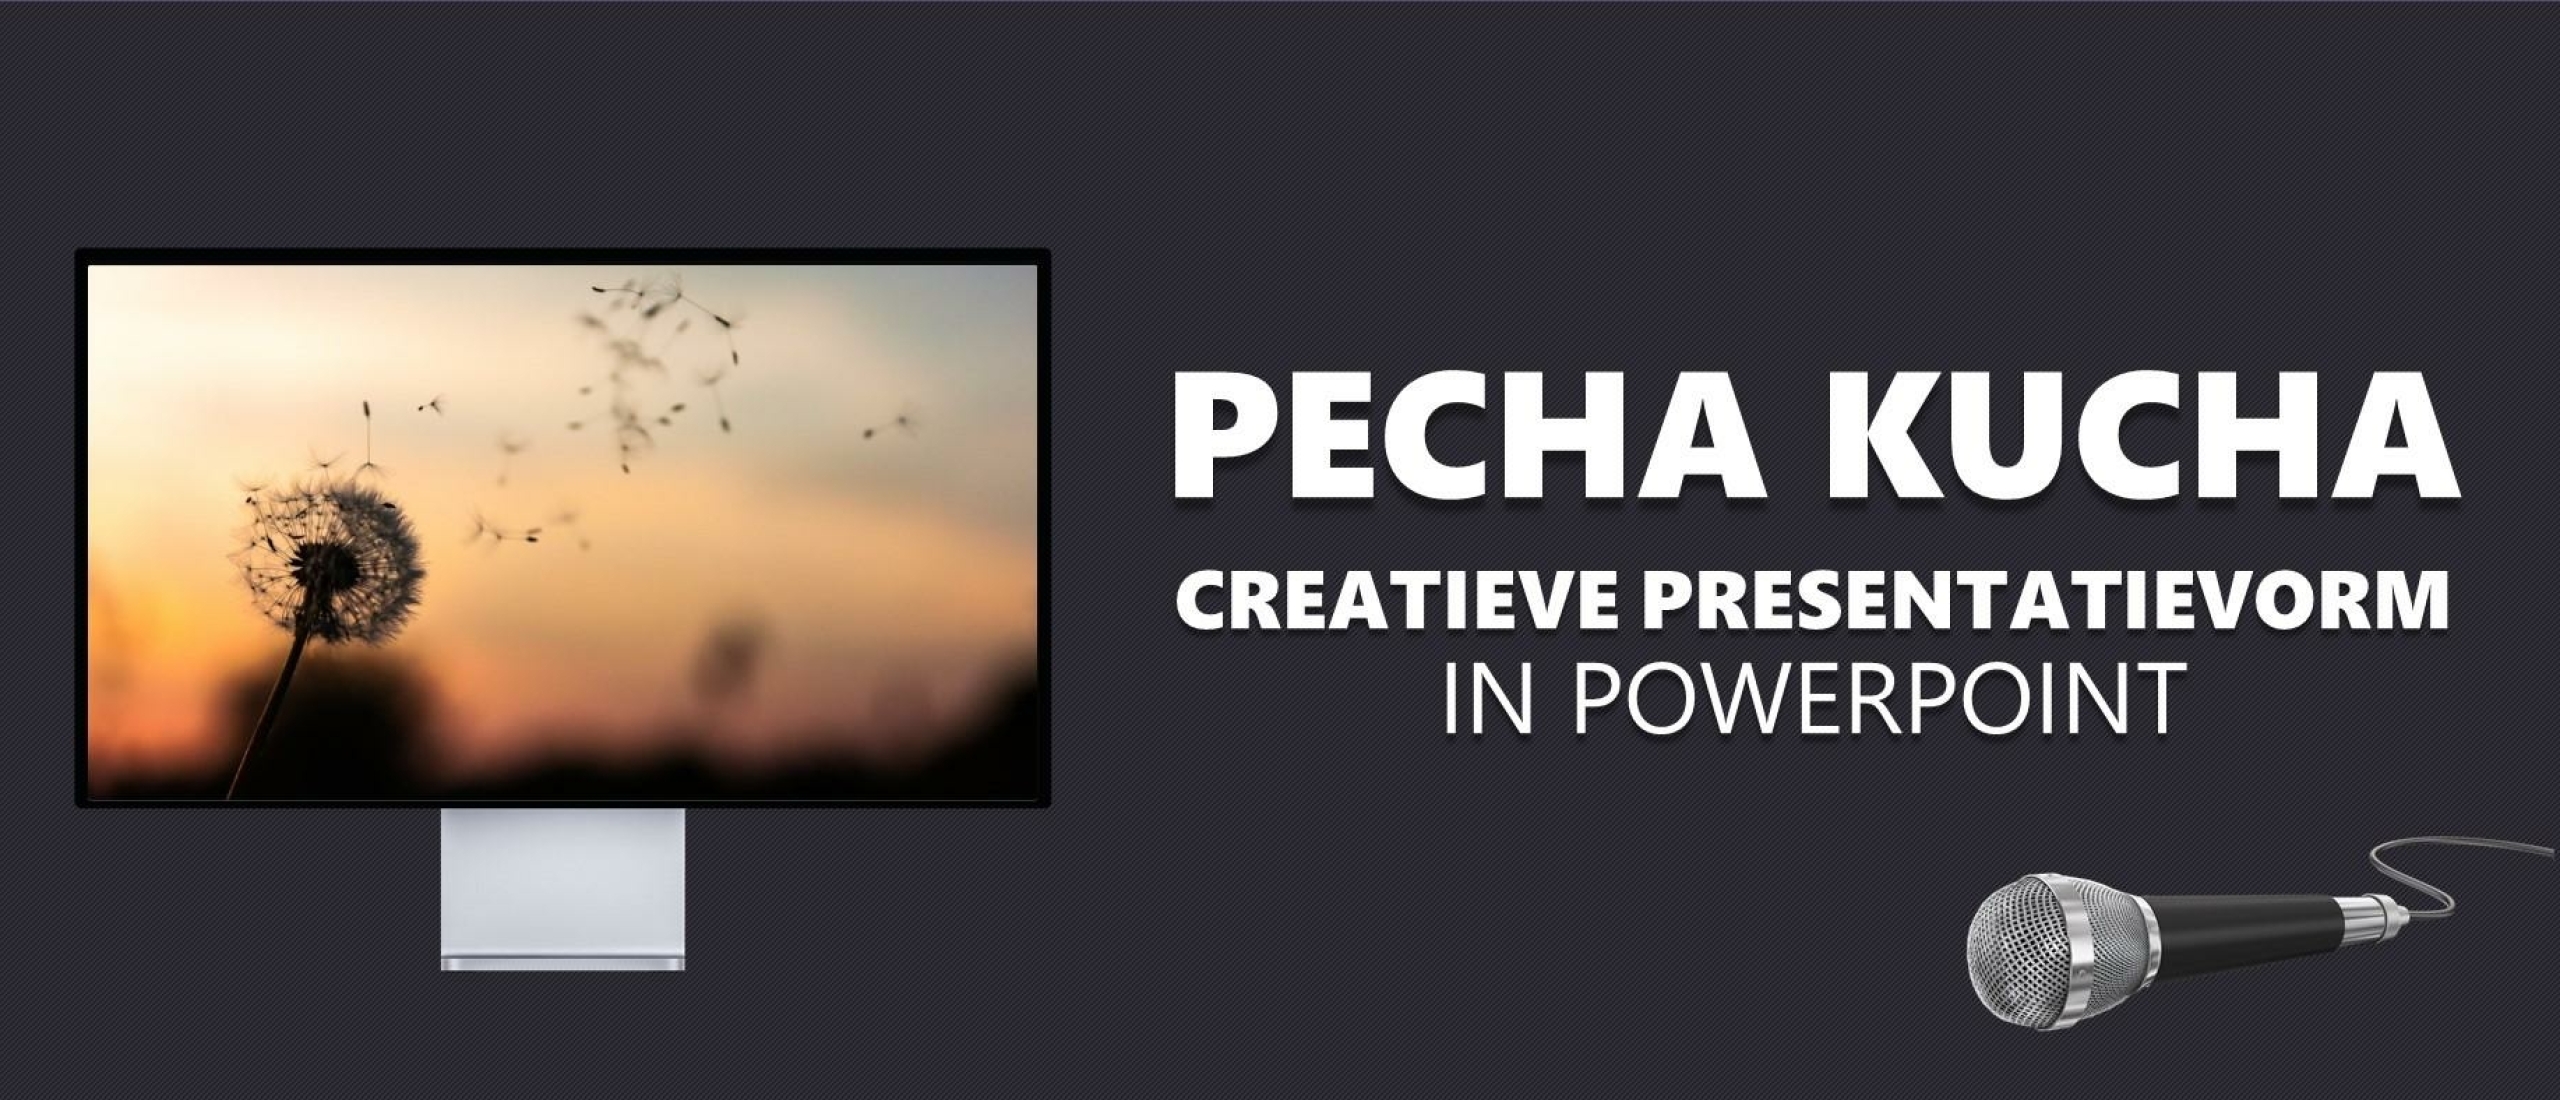 Pecha Kucha presentatie in PowerPoint: creatieve vorm van presenteren [incl. GRATIS SJABLOON]